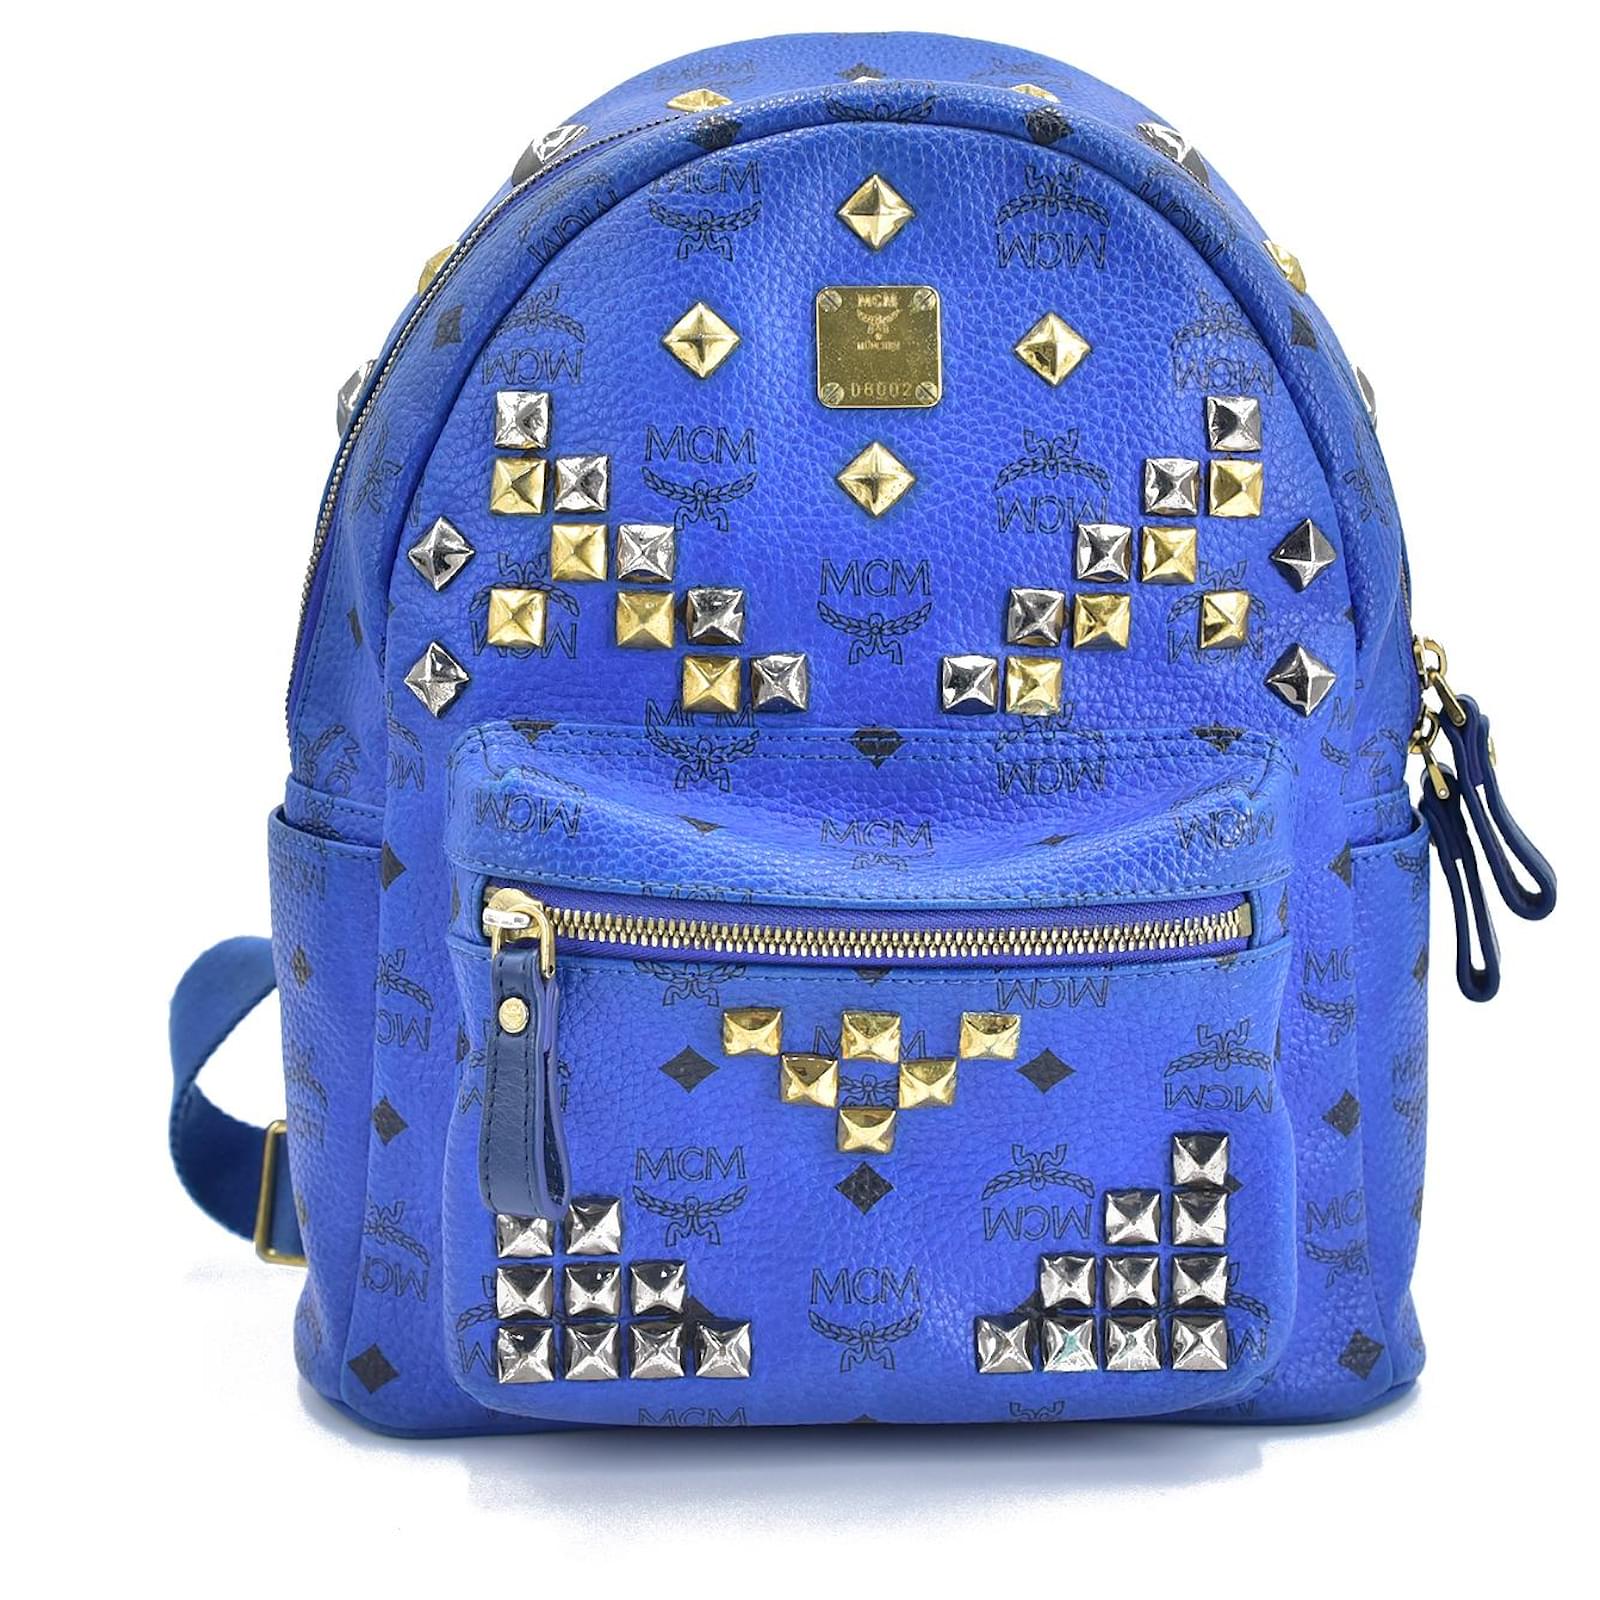 MCM Visetos Medium Side Stud Stark Backpack Blue 406185